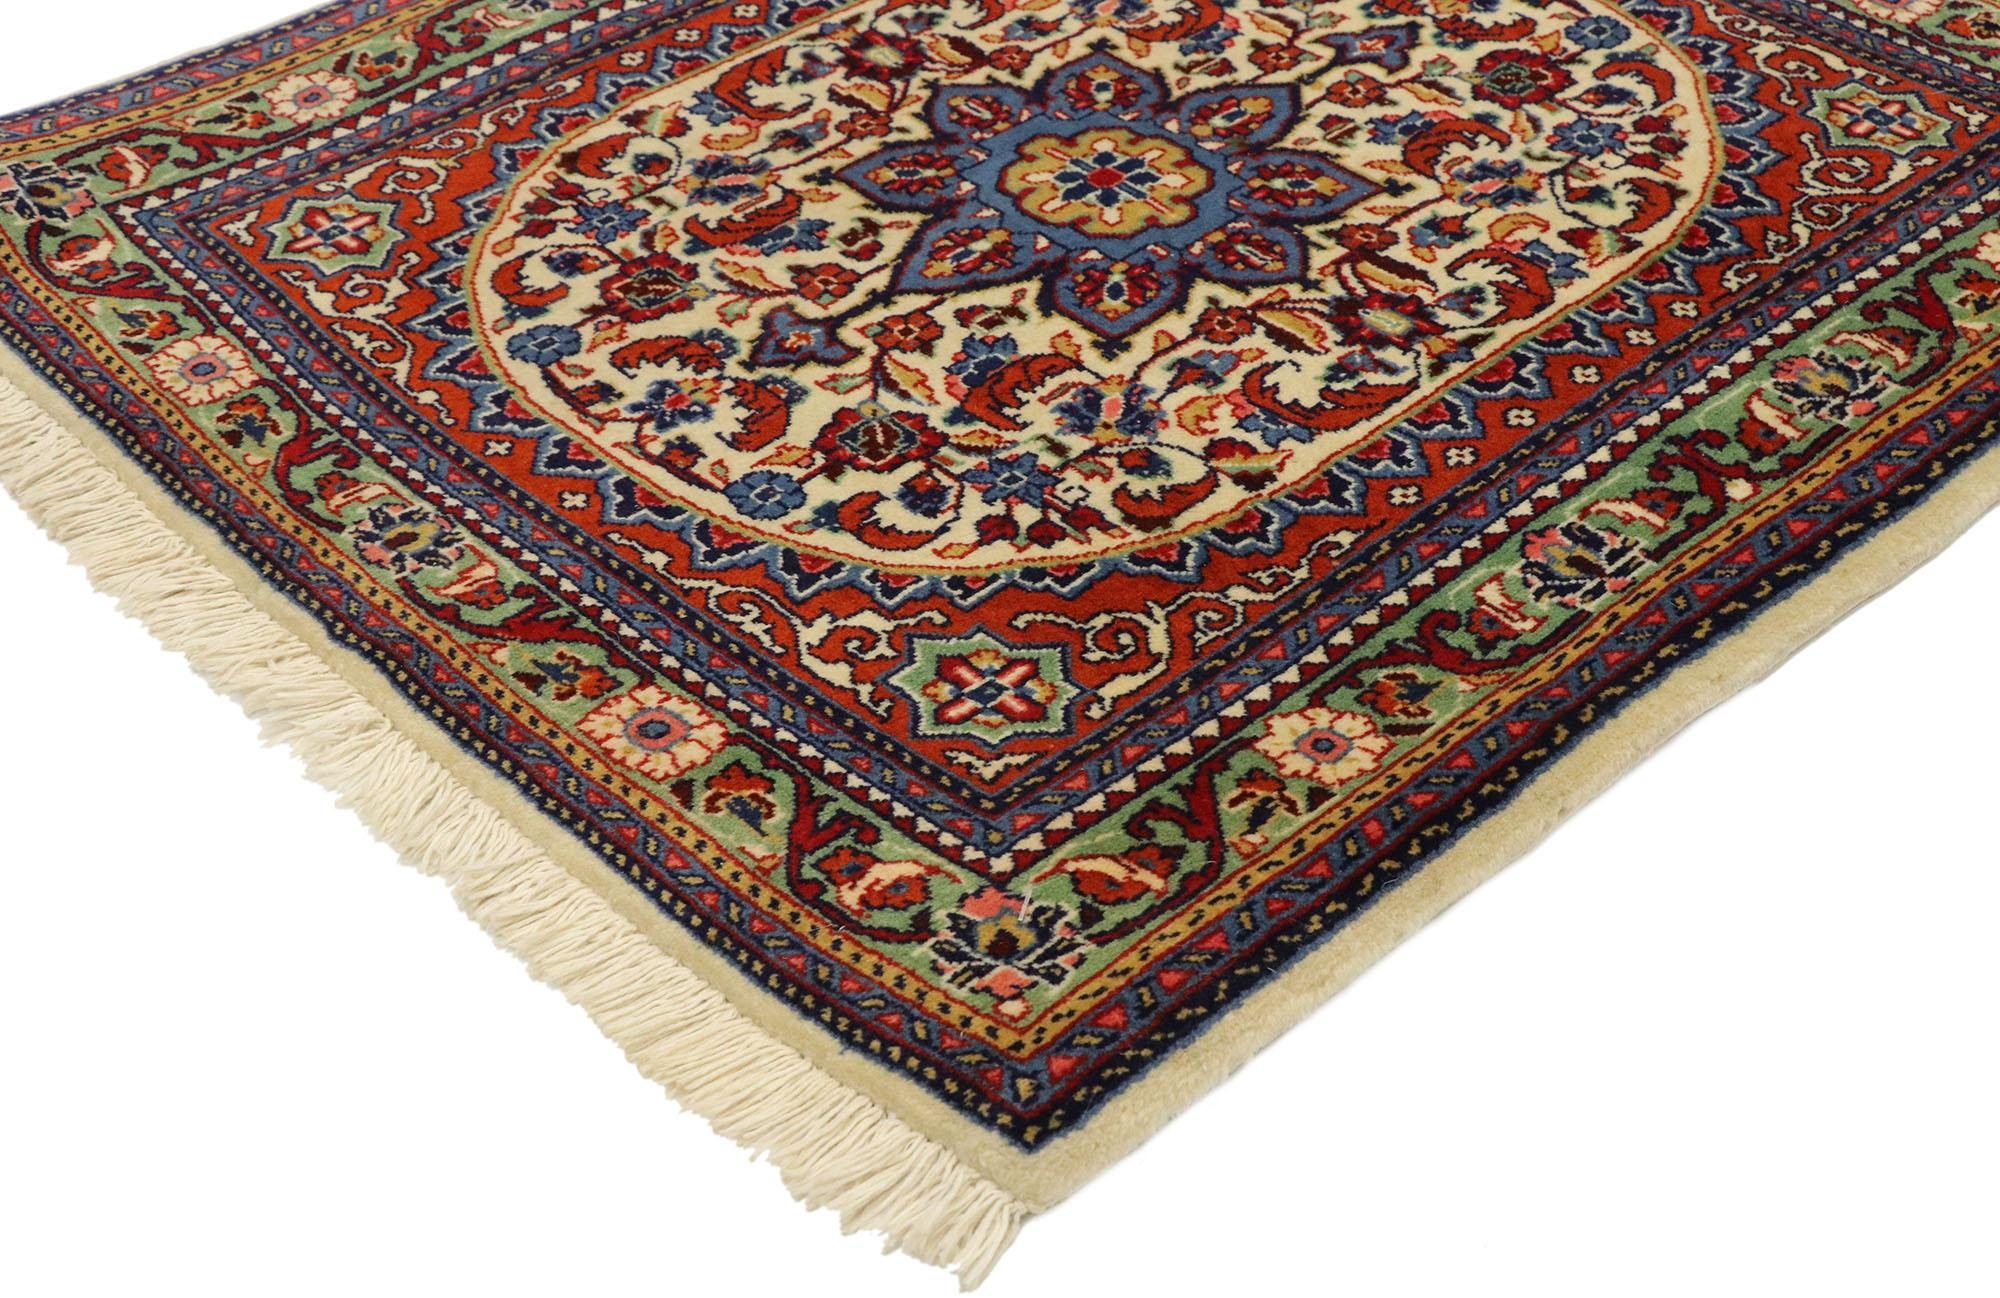 75657 Tapis sarouk persan vintage de style traditionnel américain. Riche en couleurs et d'une beauté séduisante, ce tapis Sarouk persan vintage en laine noué à la main incarne à merveille le style traditionnel américain. Elle présente un médaillon